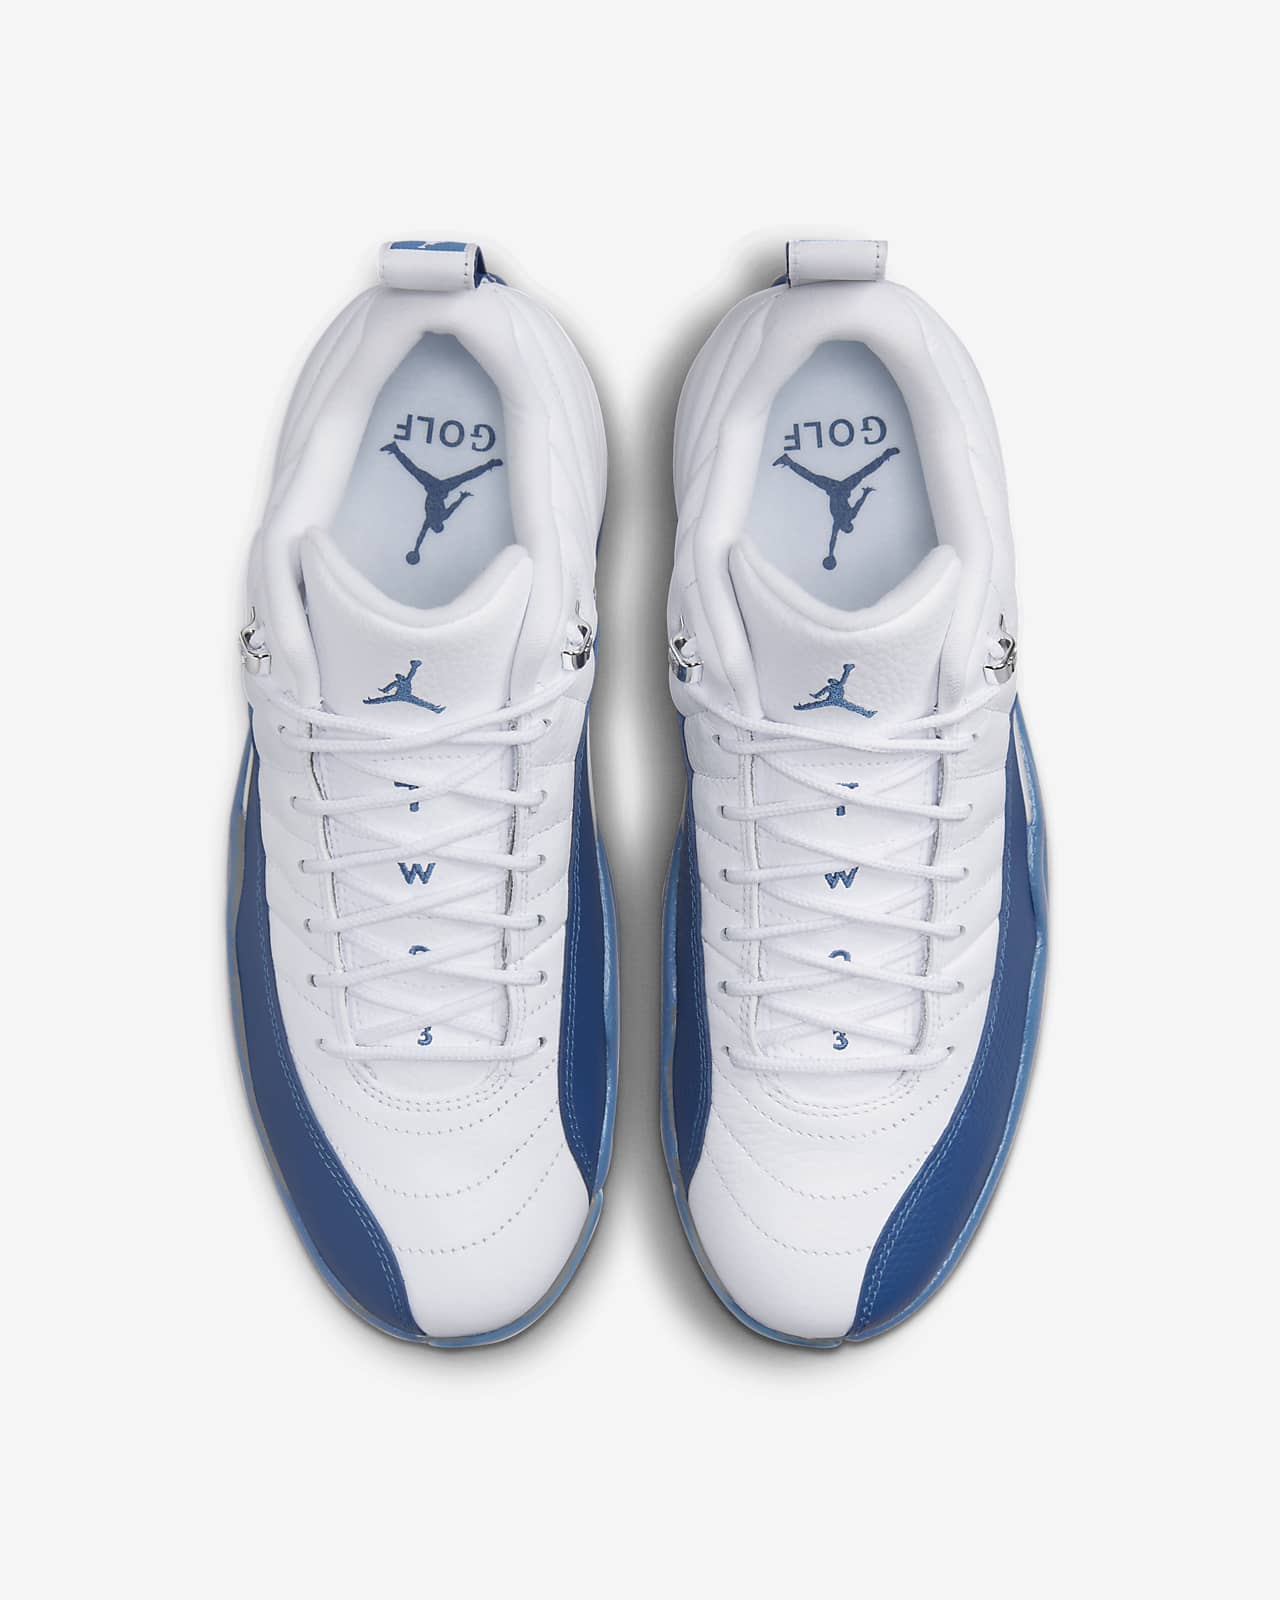 Air Jordan 12 Low Golf Shoes. Nike RO